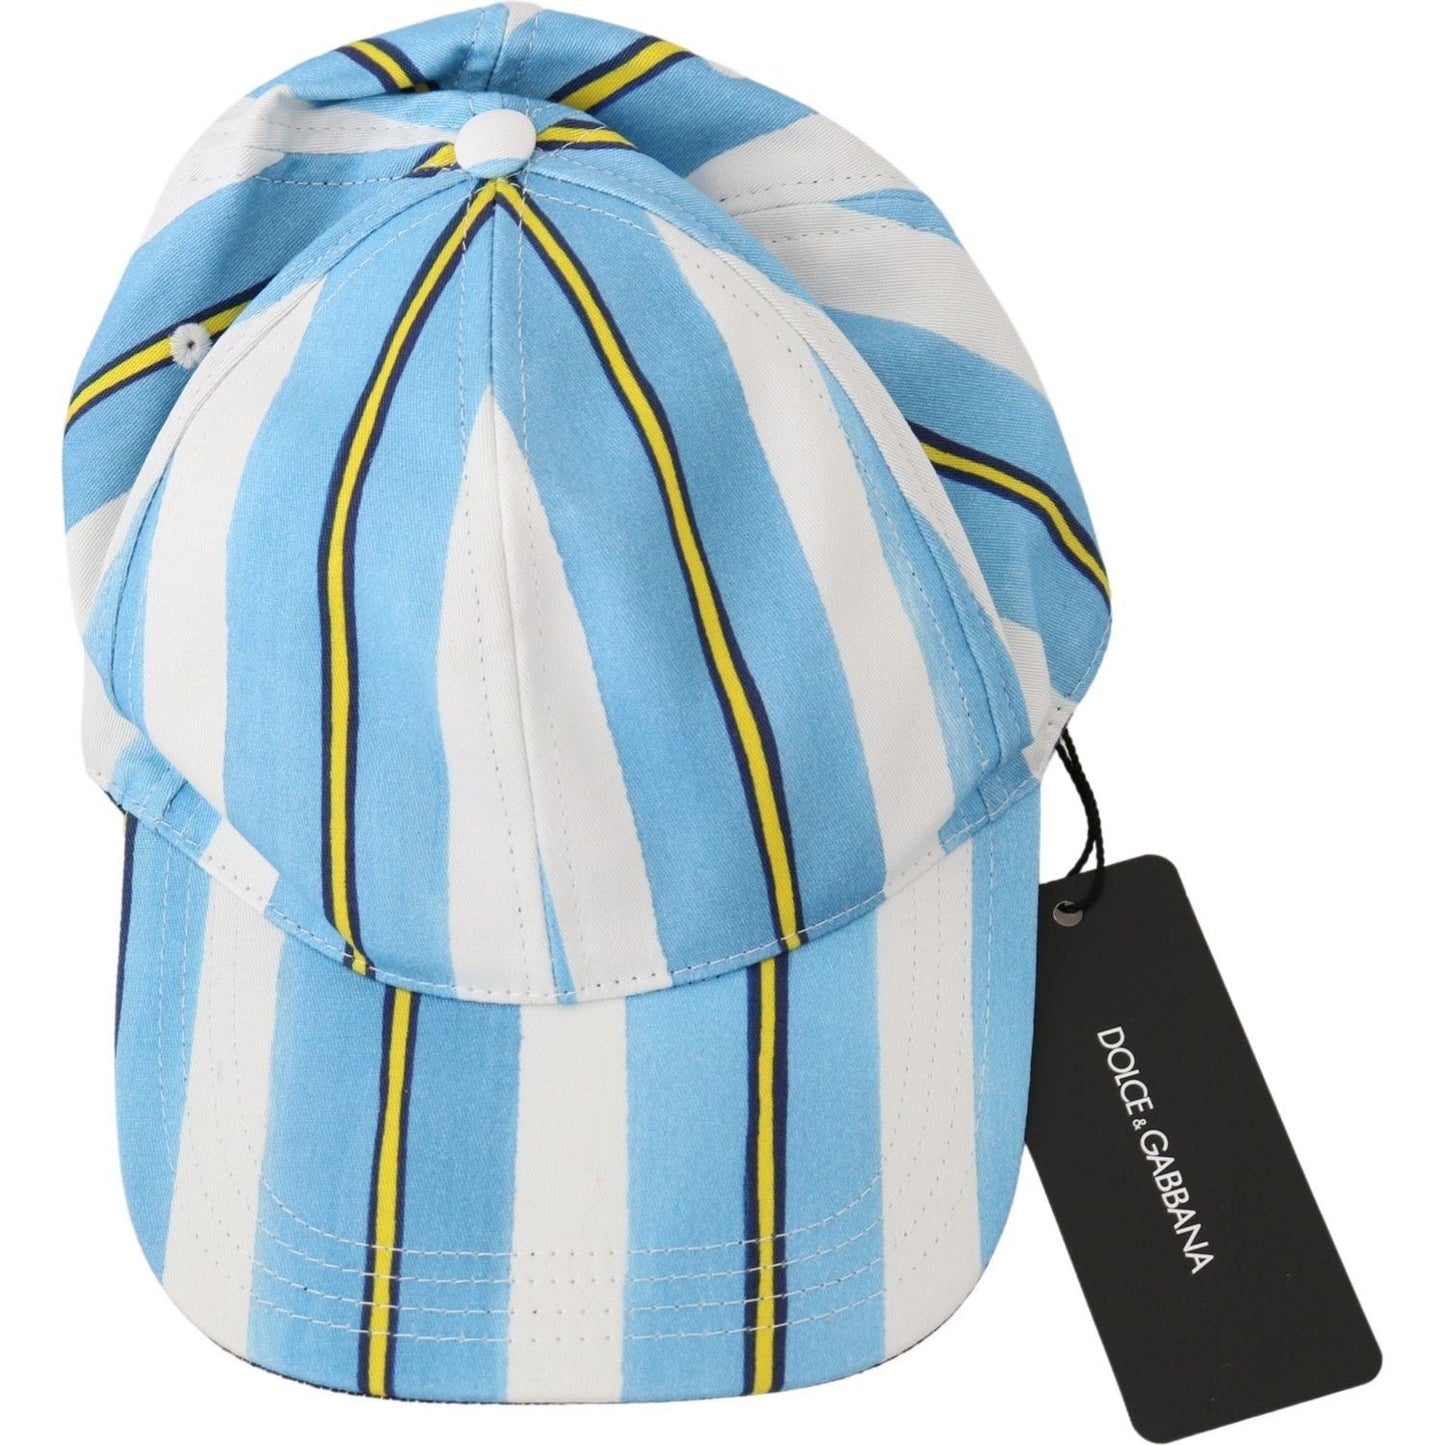 Dolce & Gabbana Chic Stripe Cotton Baseball Cap Cap multicolor-stripes-baseball-cotton-cap